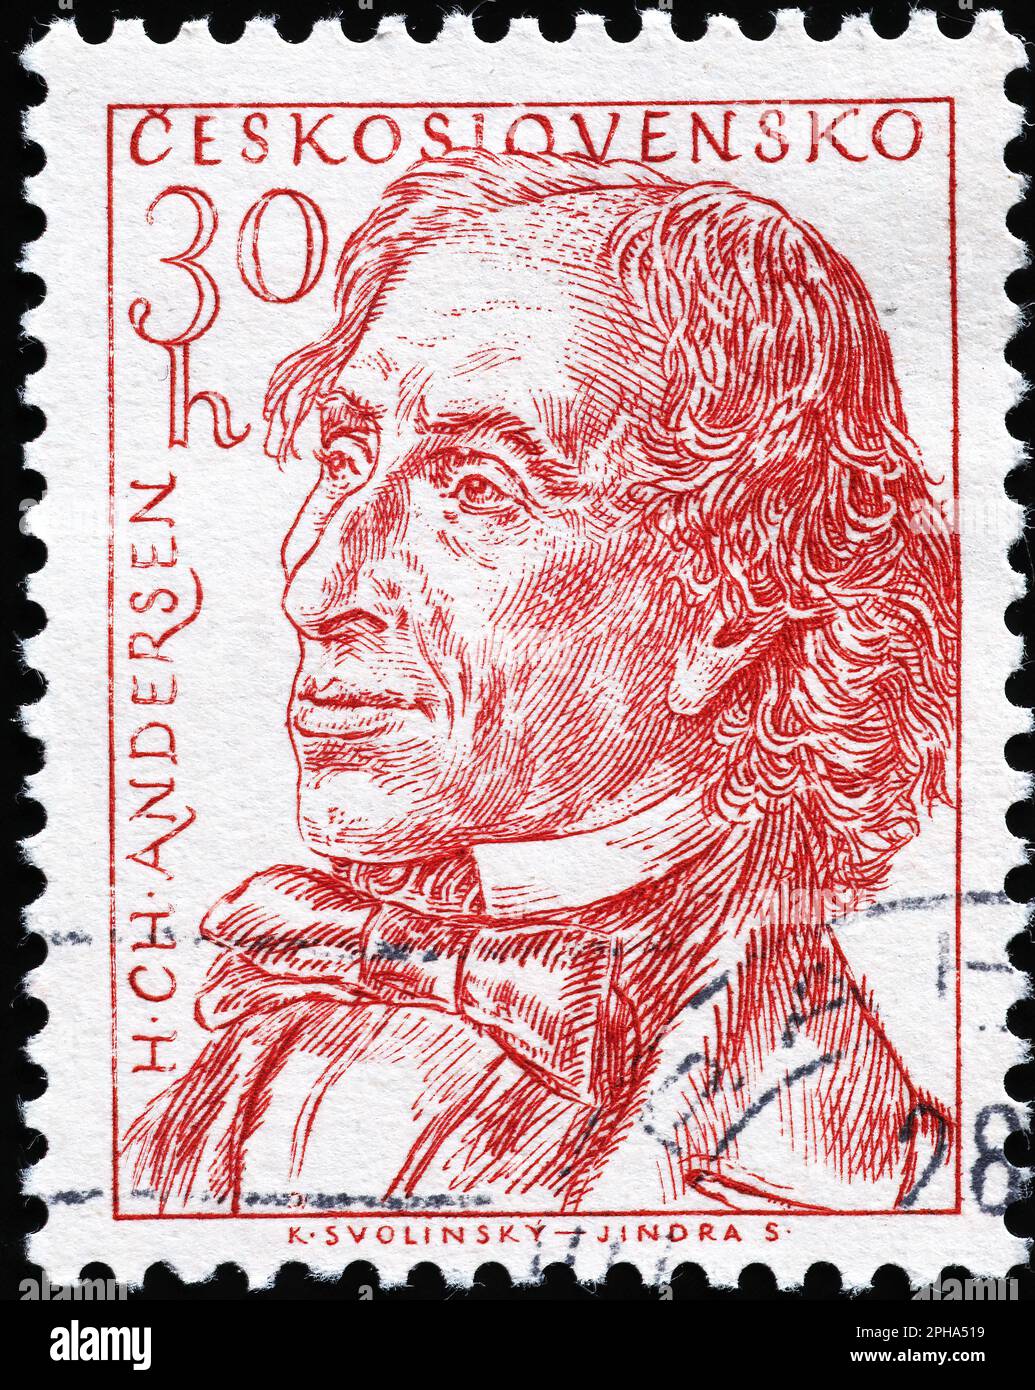 Hans Christian Andersen sur le timbre tchèque Banque D'Images